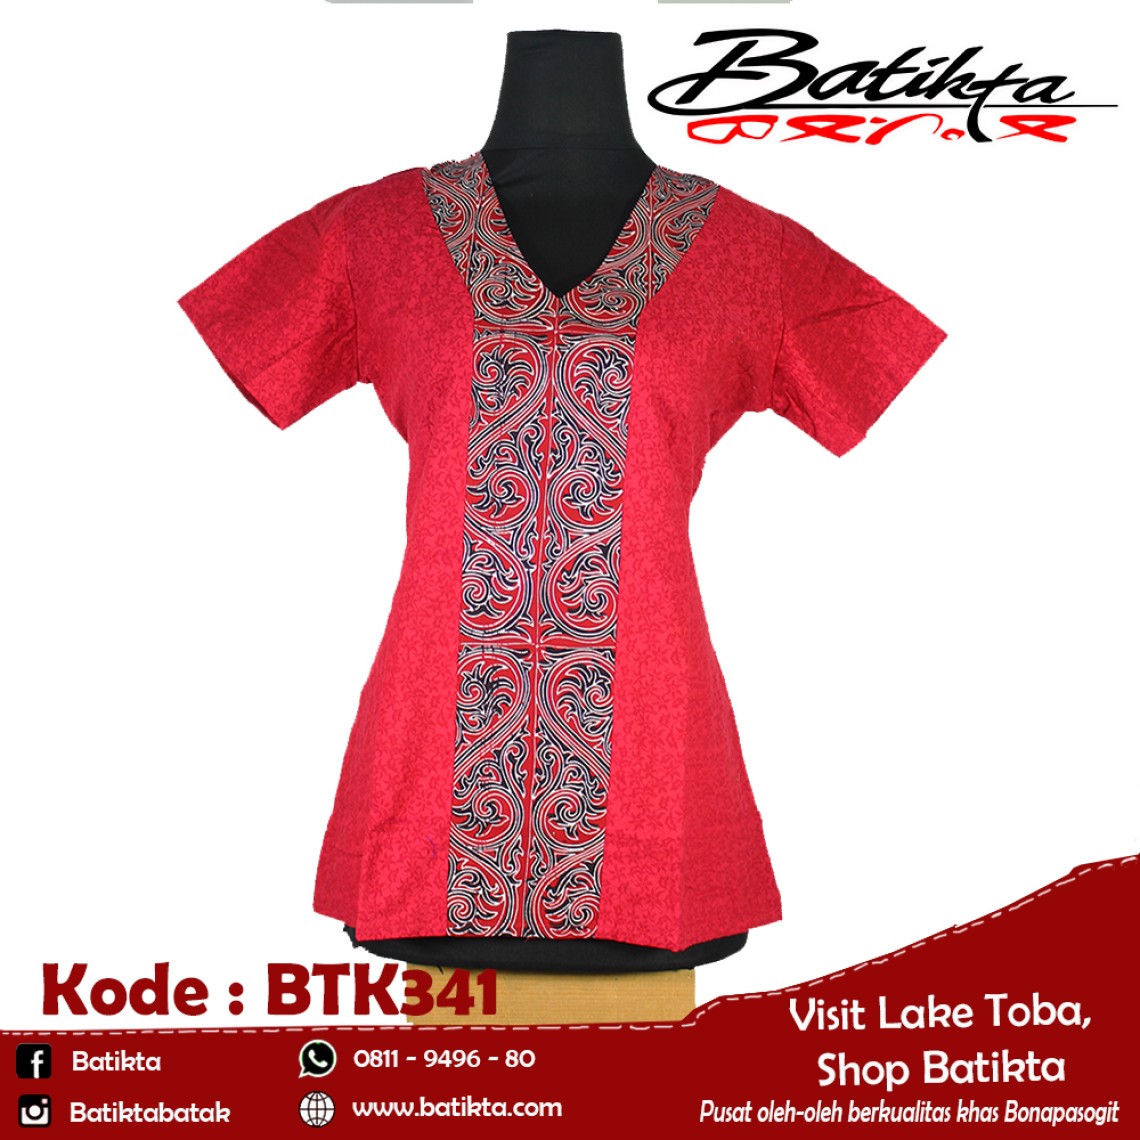 BTK341 Blus Batik Motif Gorga Warna Merah Putih Hitam profile picture